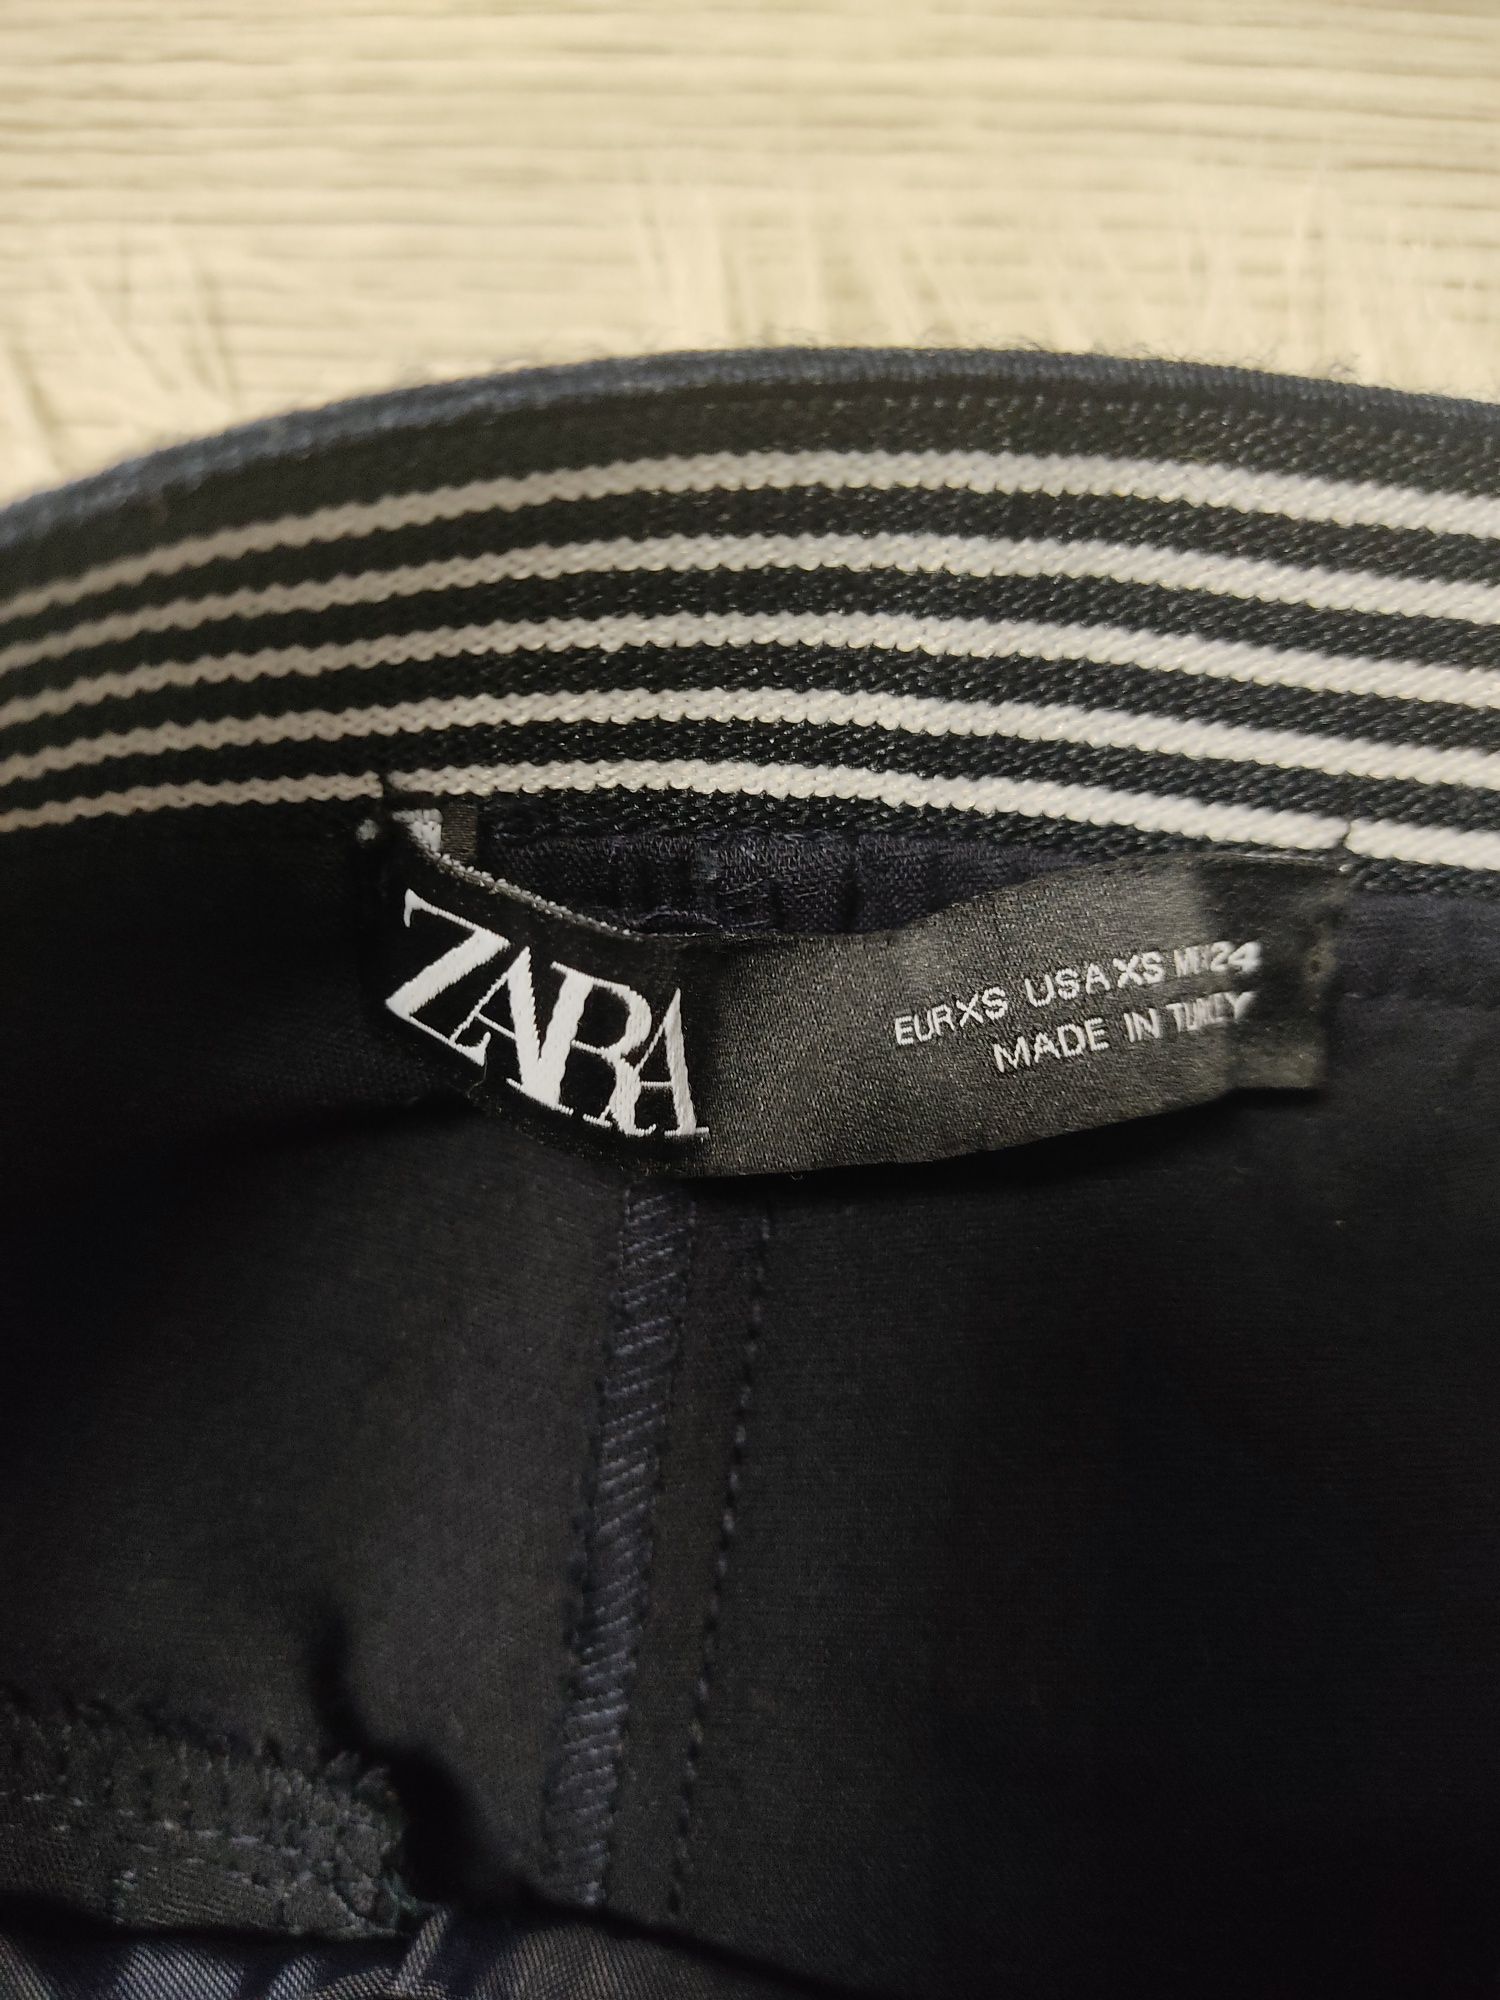 Spodnie ciemno granatowe Zara XS